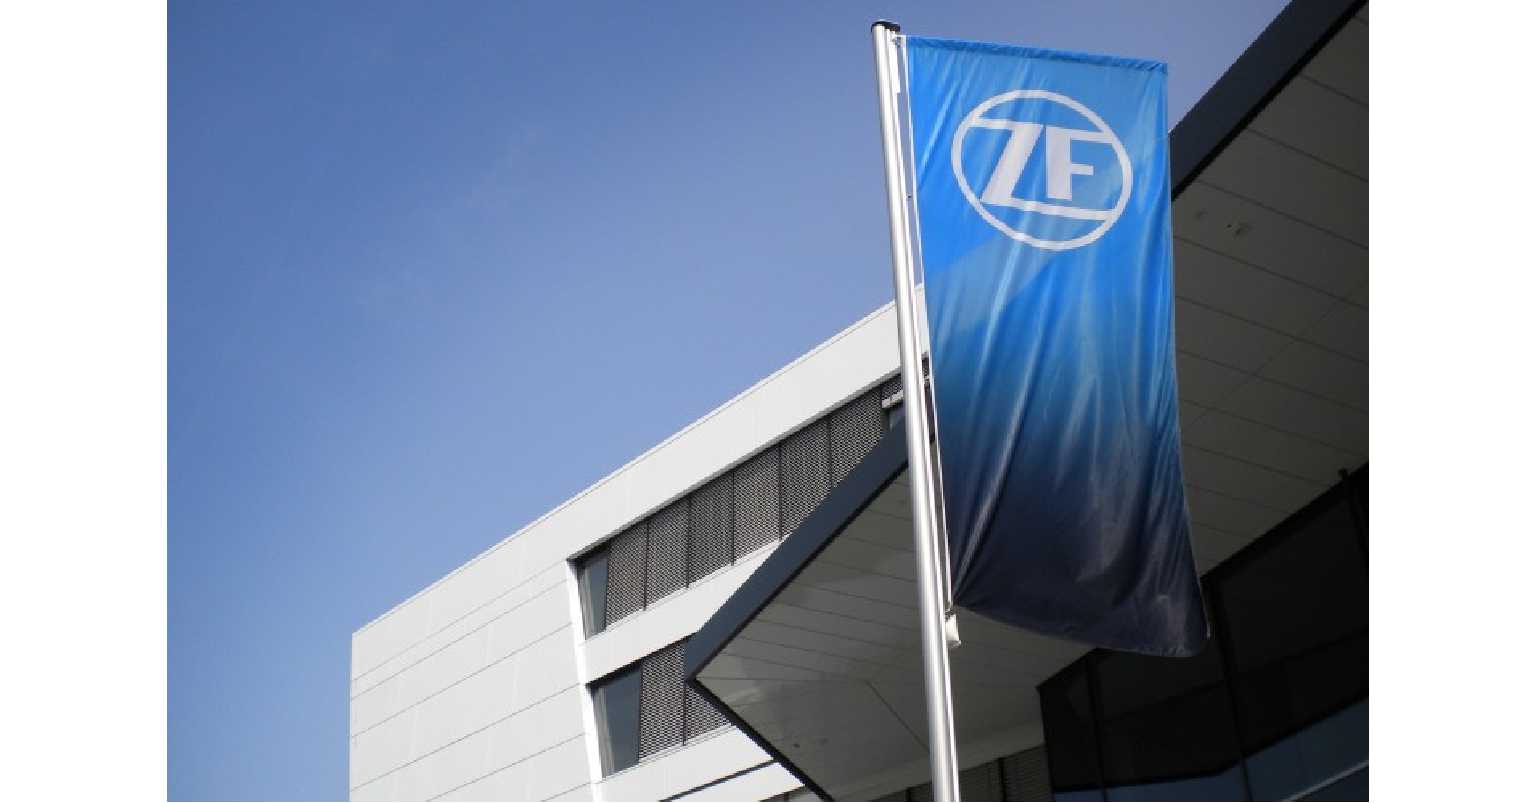 ZF jest światowym liderem produkcji układów hamulcowych. Jako pierwsze przedsiębiorstwo na świecie, wyprodukowało 200 milionów jednostek EPB.